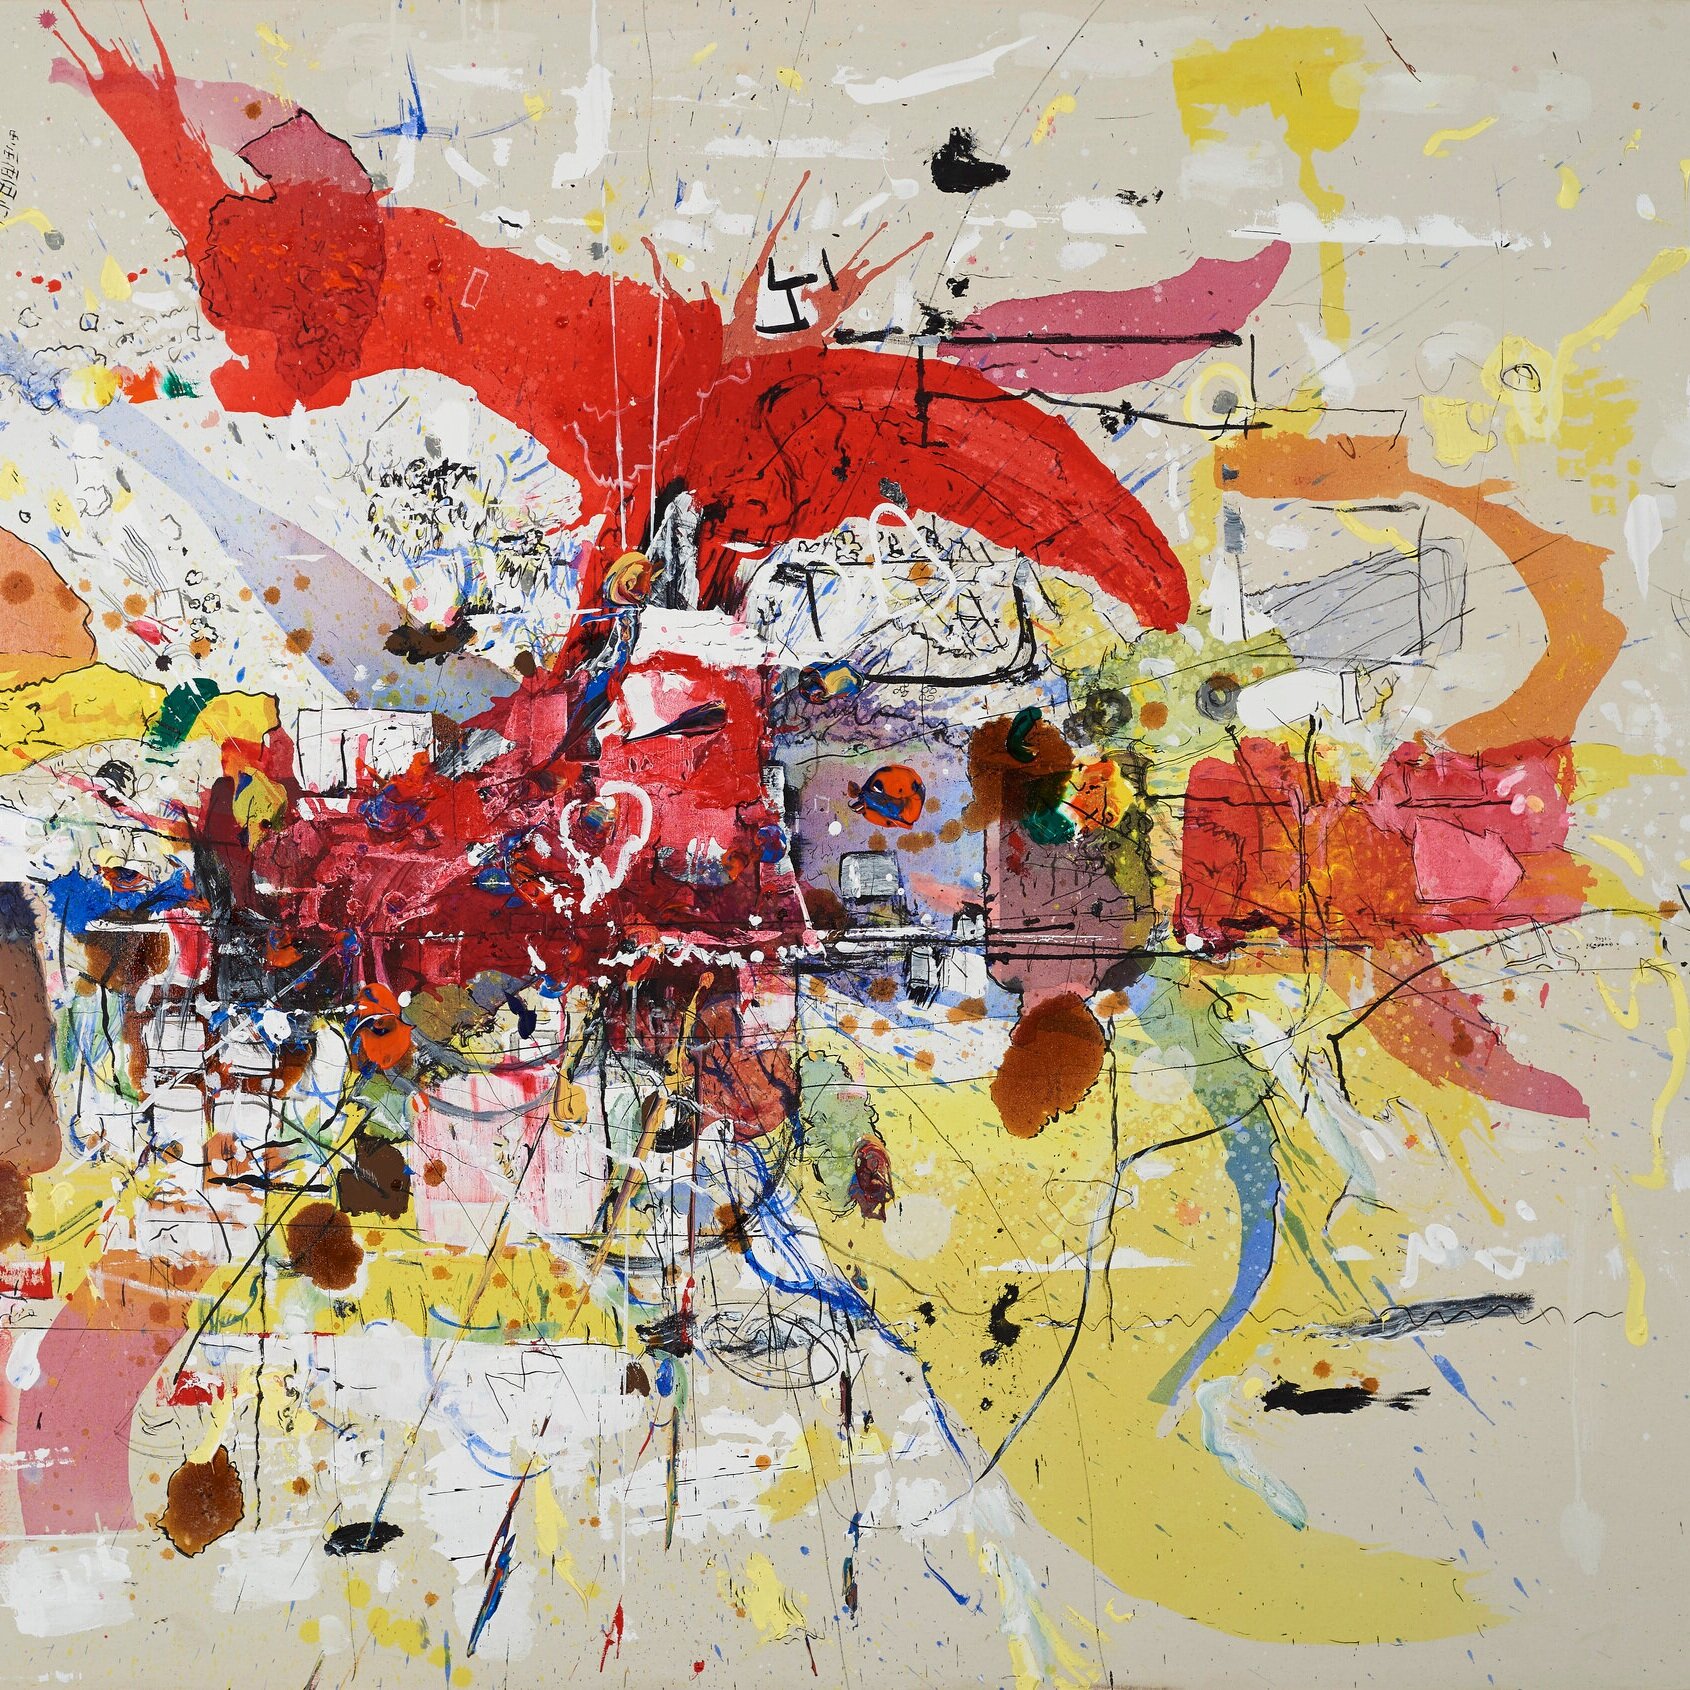   Marcelo Legrand  Sin título  , 2019-2020   Acrílico sobre tela  148 x 220 cm  Galería SUR 